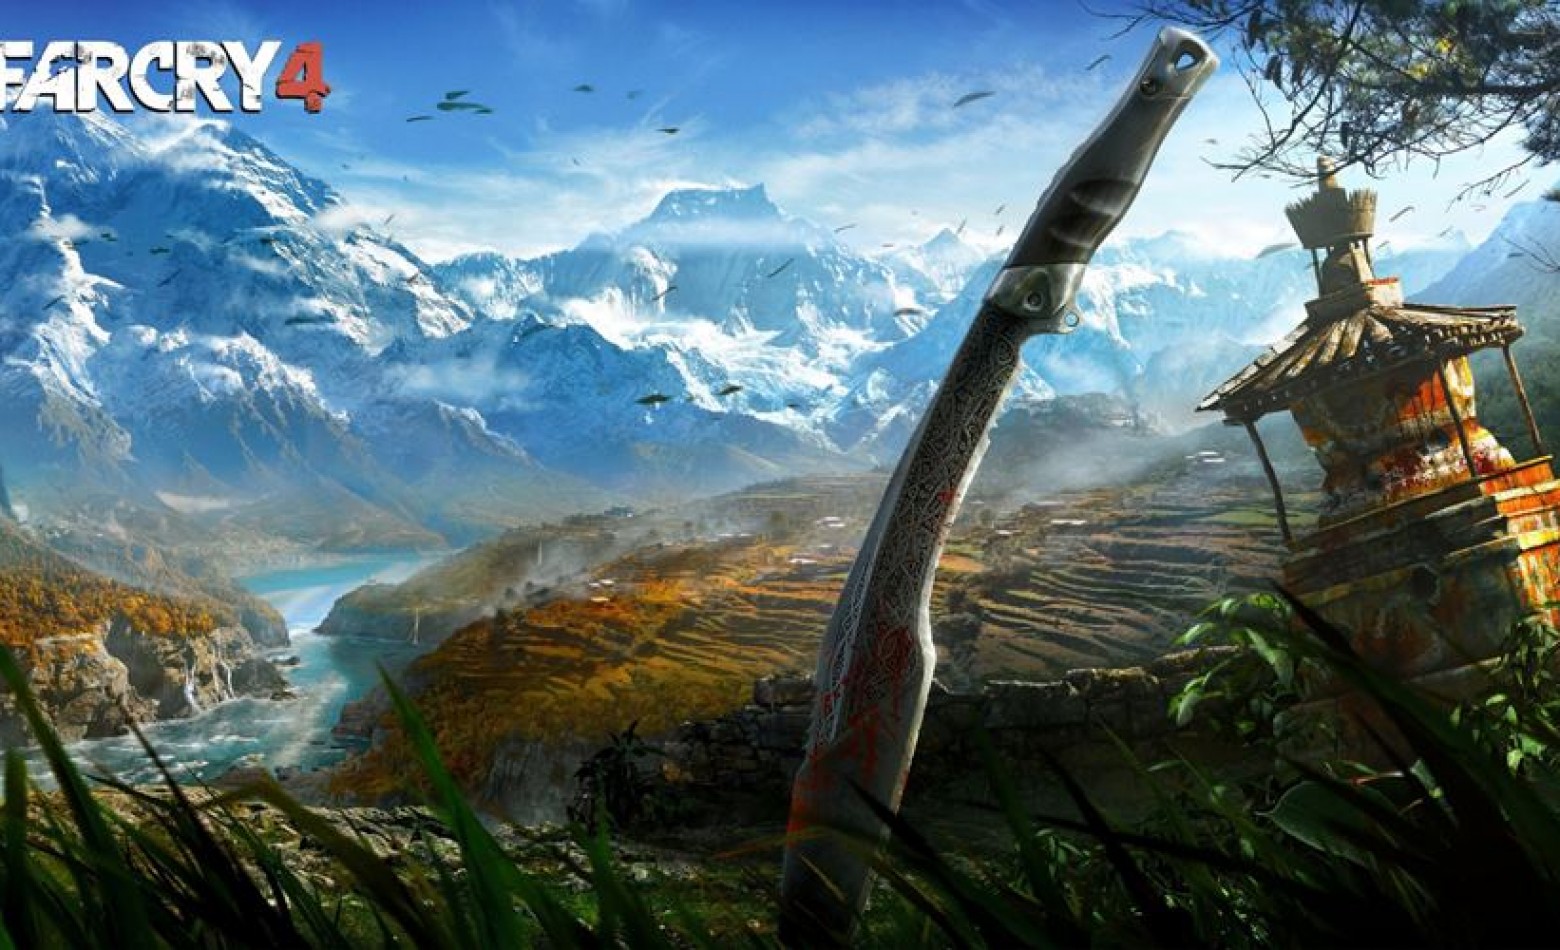 Desenvolvedores de Far Cry 4 continuam viajando pelo Nepal